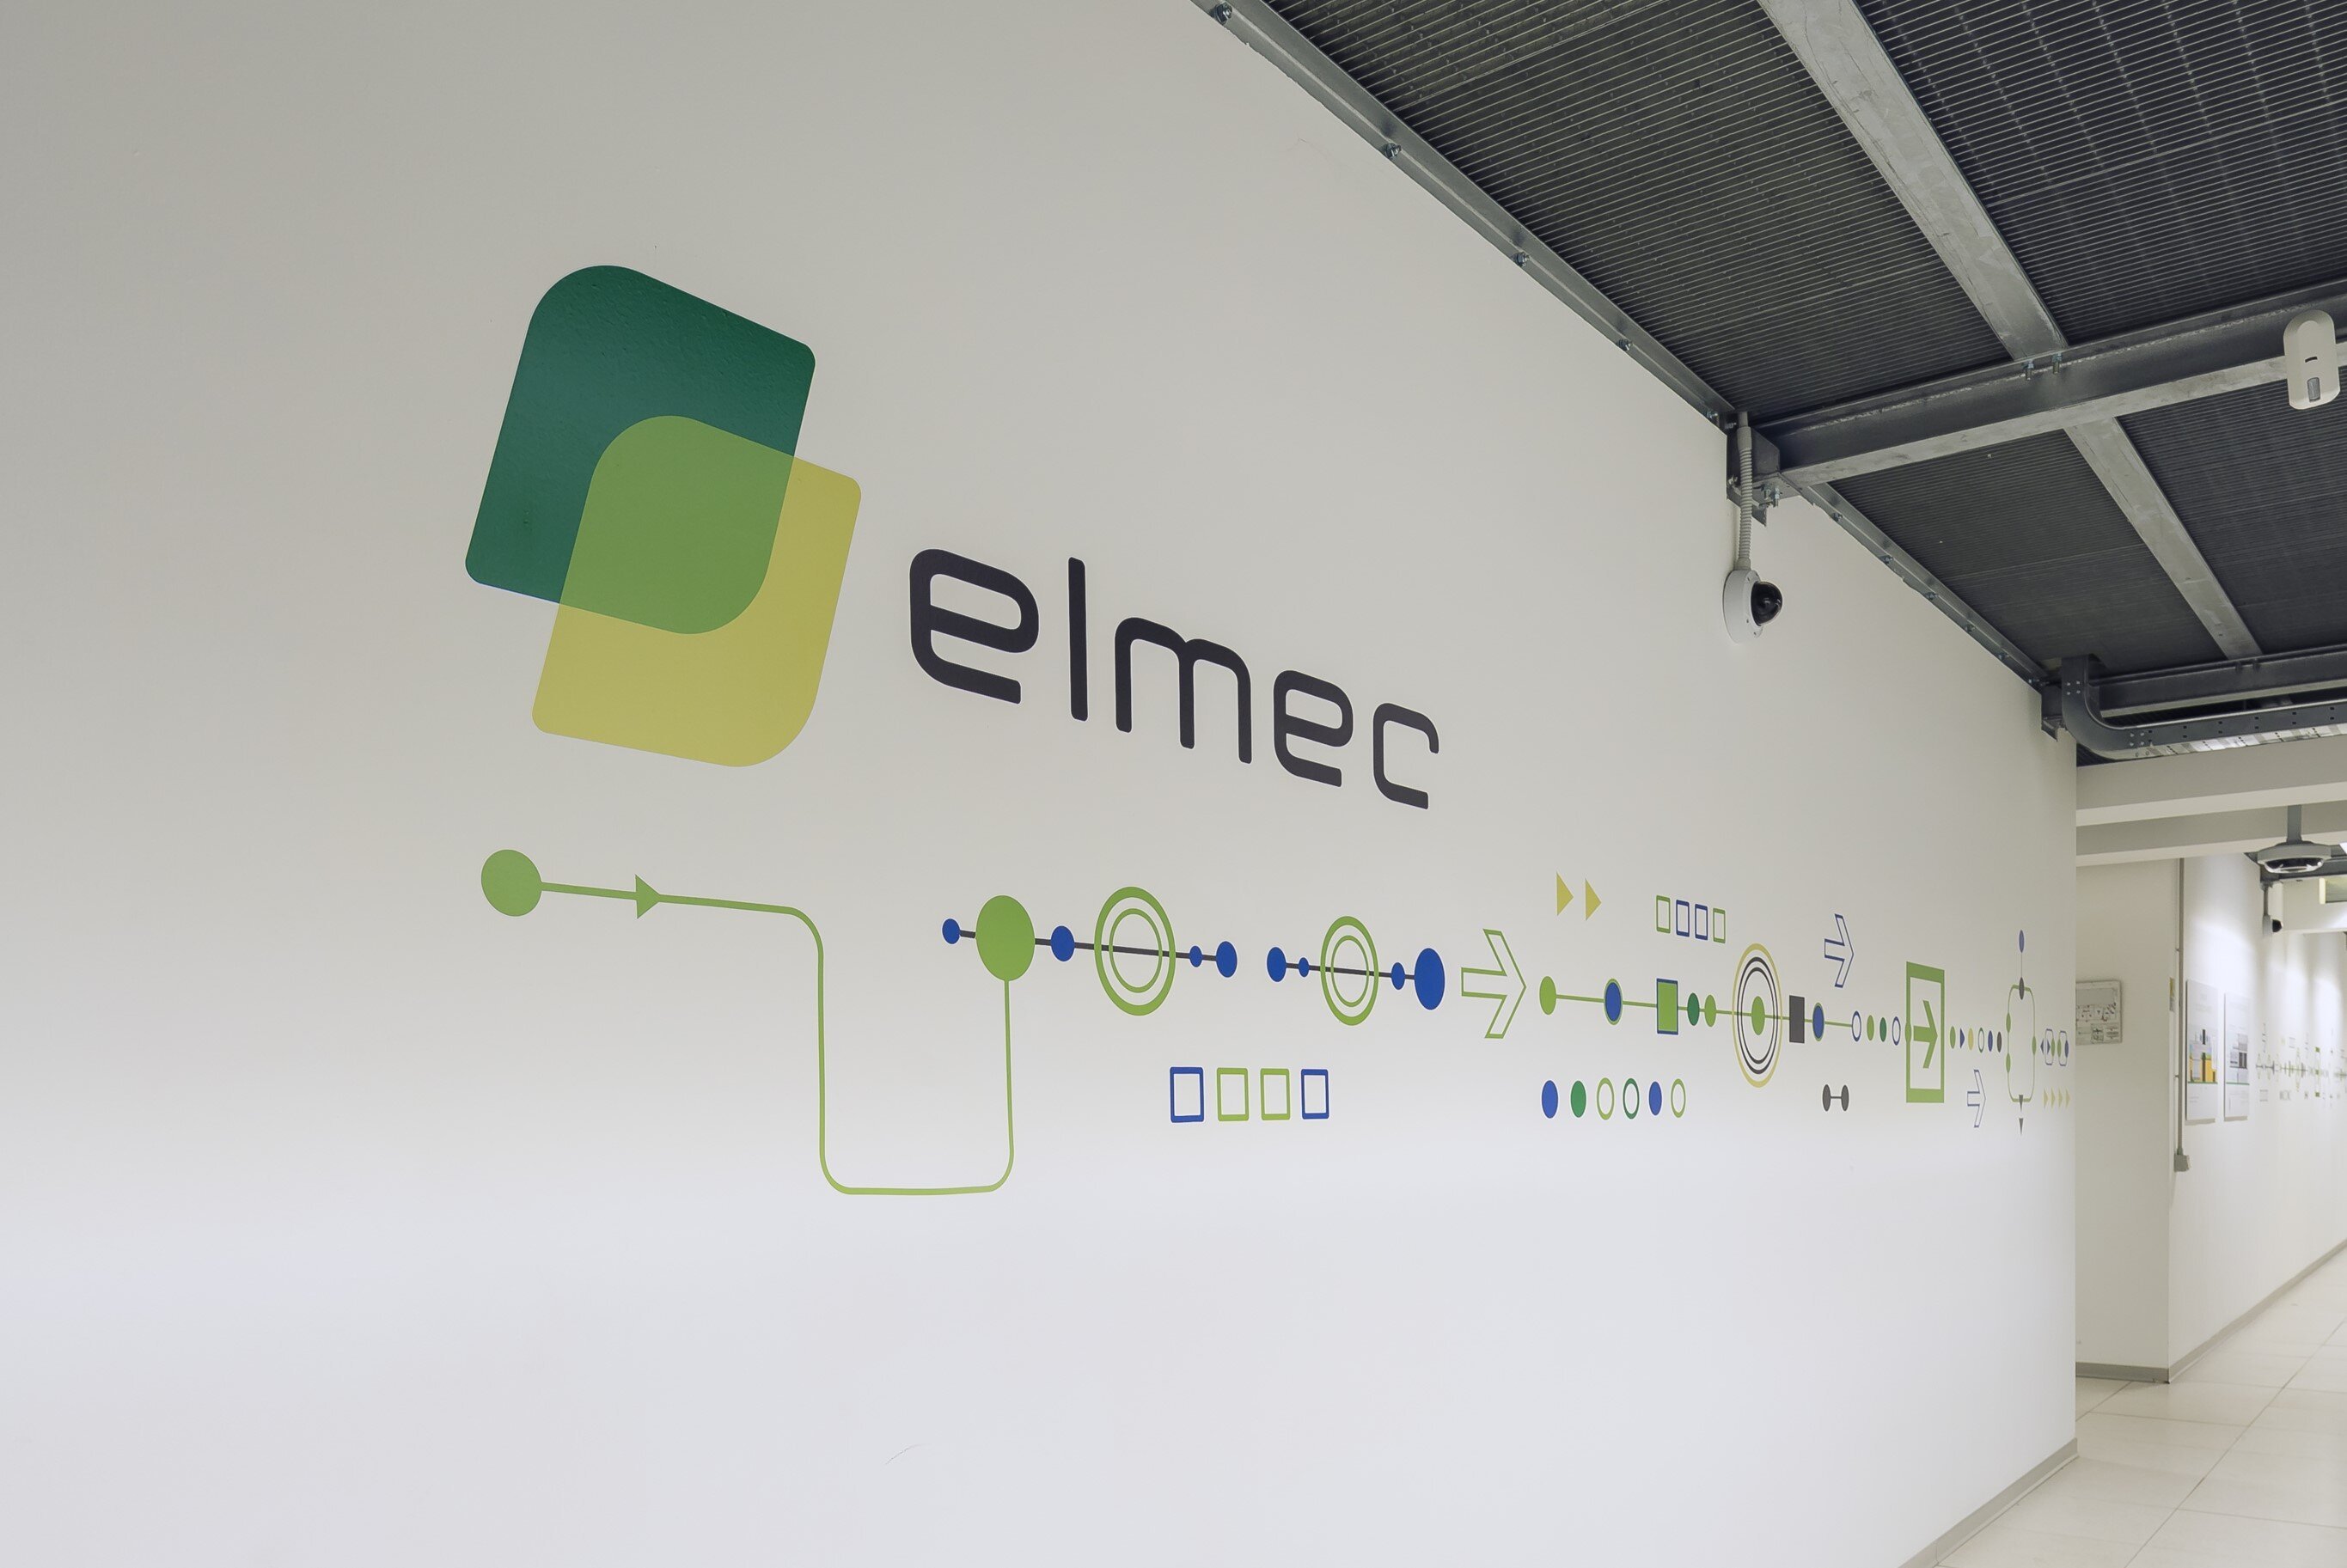 L'impegno di Elmec nella sostenibilità: il corso di digitalizzazione di base per Fondazione Felicita Morandi